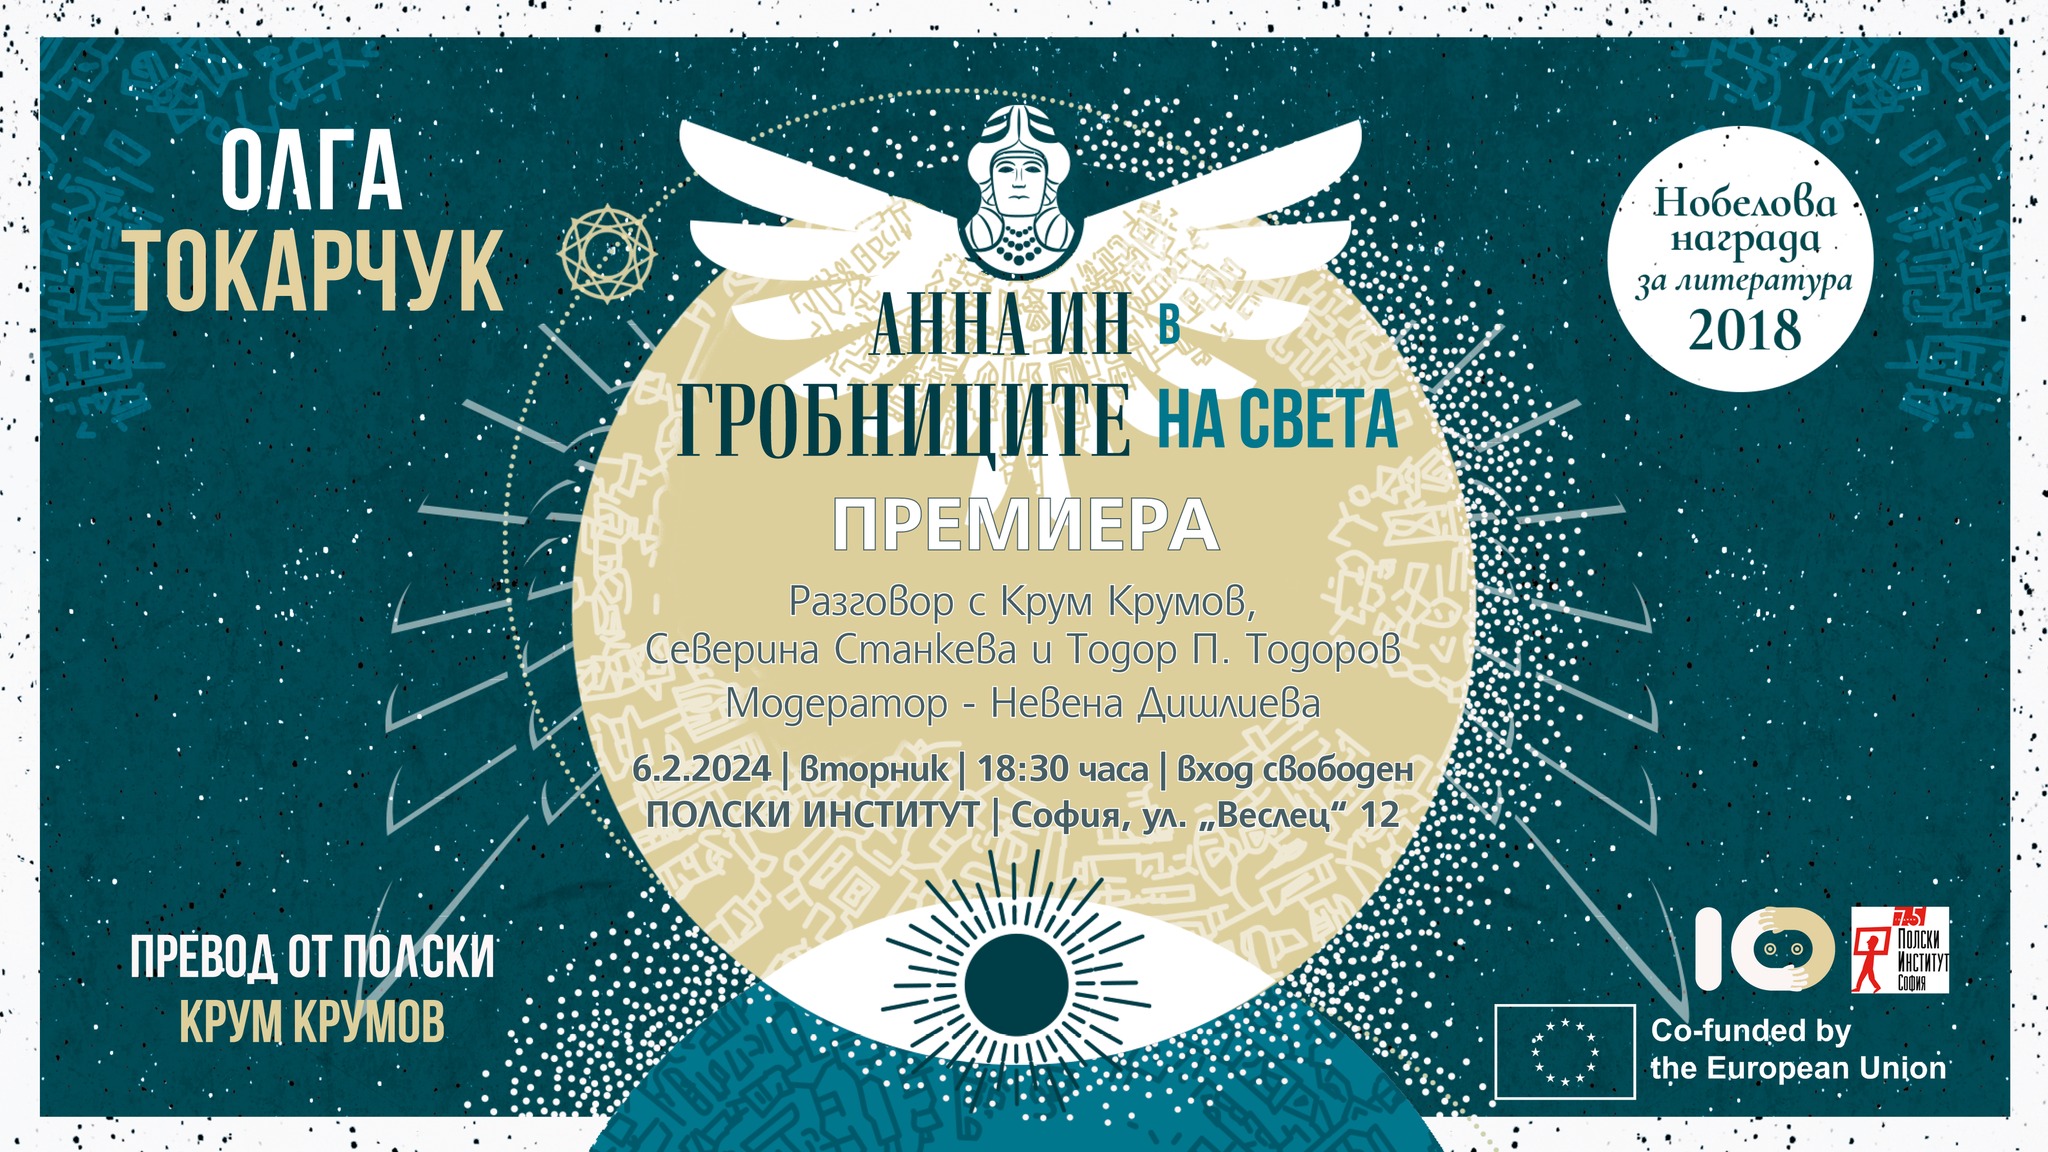 Премиера на “Анна Ин в гробниците на света” от Олга Токарчук